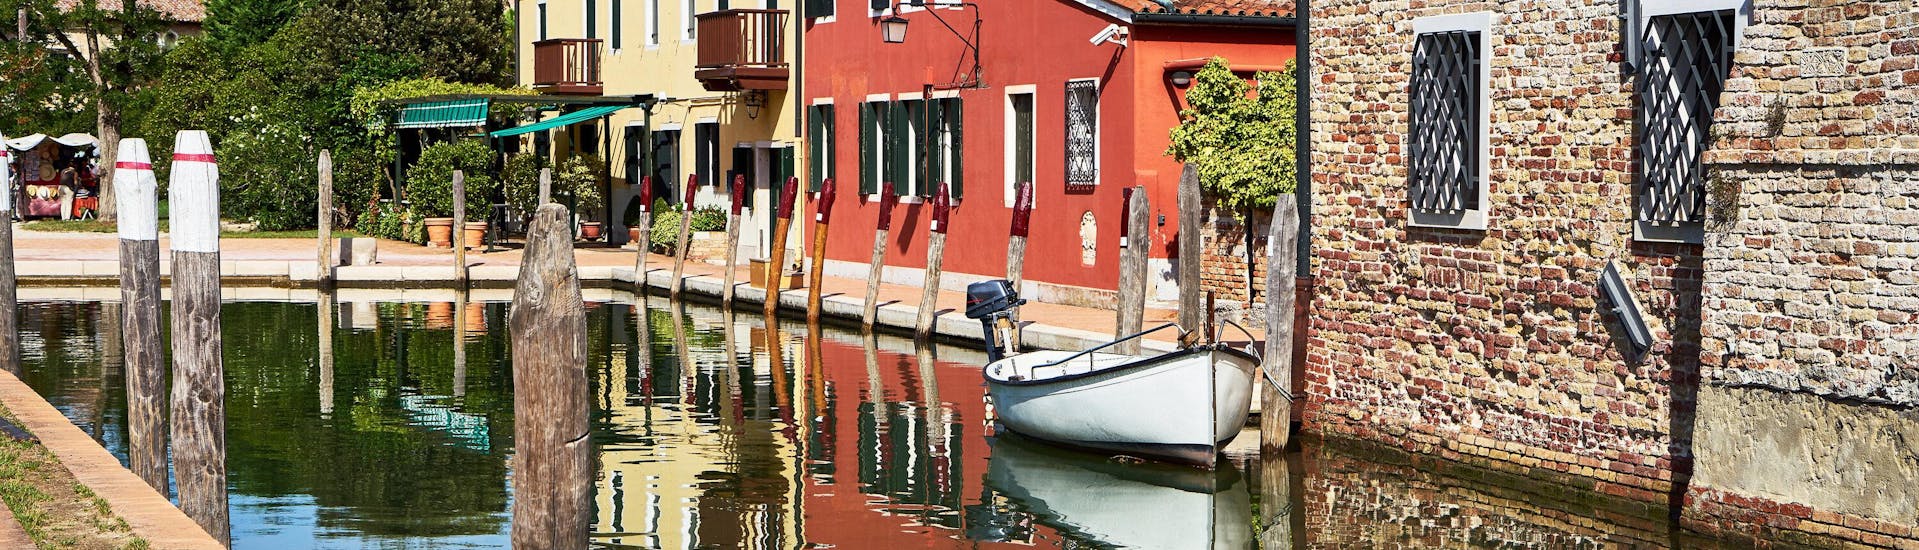 Un bateau dans le canal lors d'une excursion en bateau à Torcello.